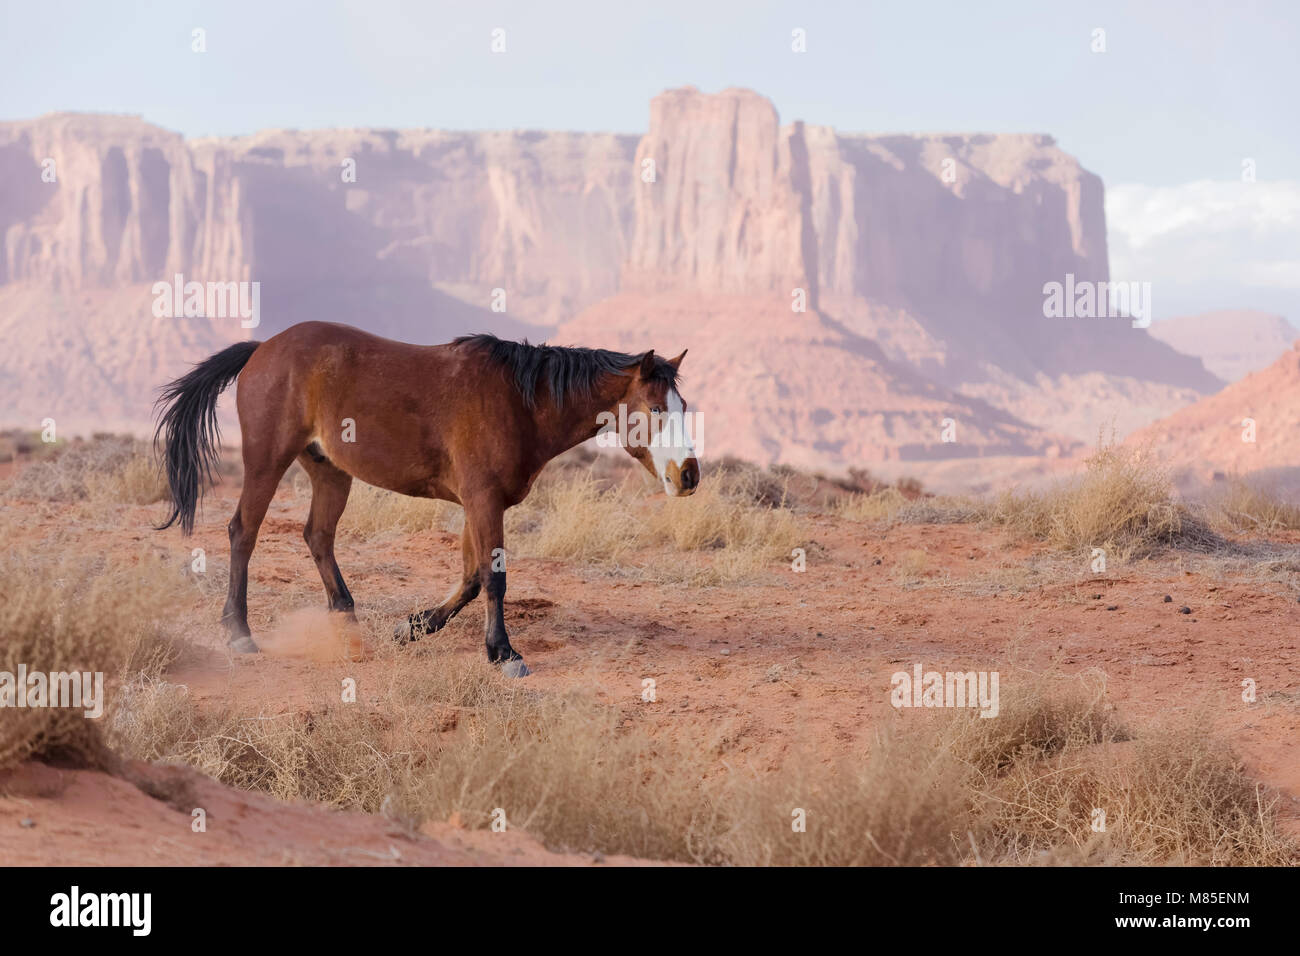 Wildes Pferd mit blauen Augen und Sandstein Buttes in der Ferne, Monument Valley Tribal Park, Arizona Stockfoto